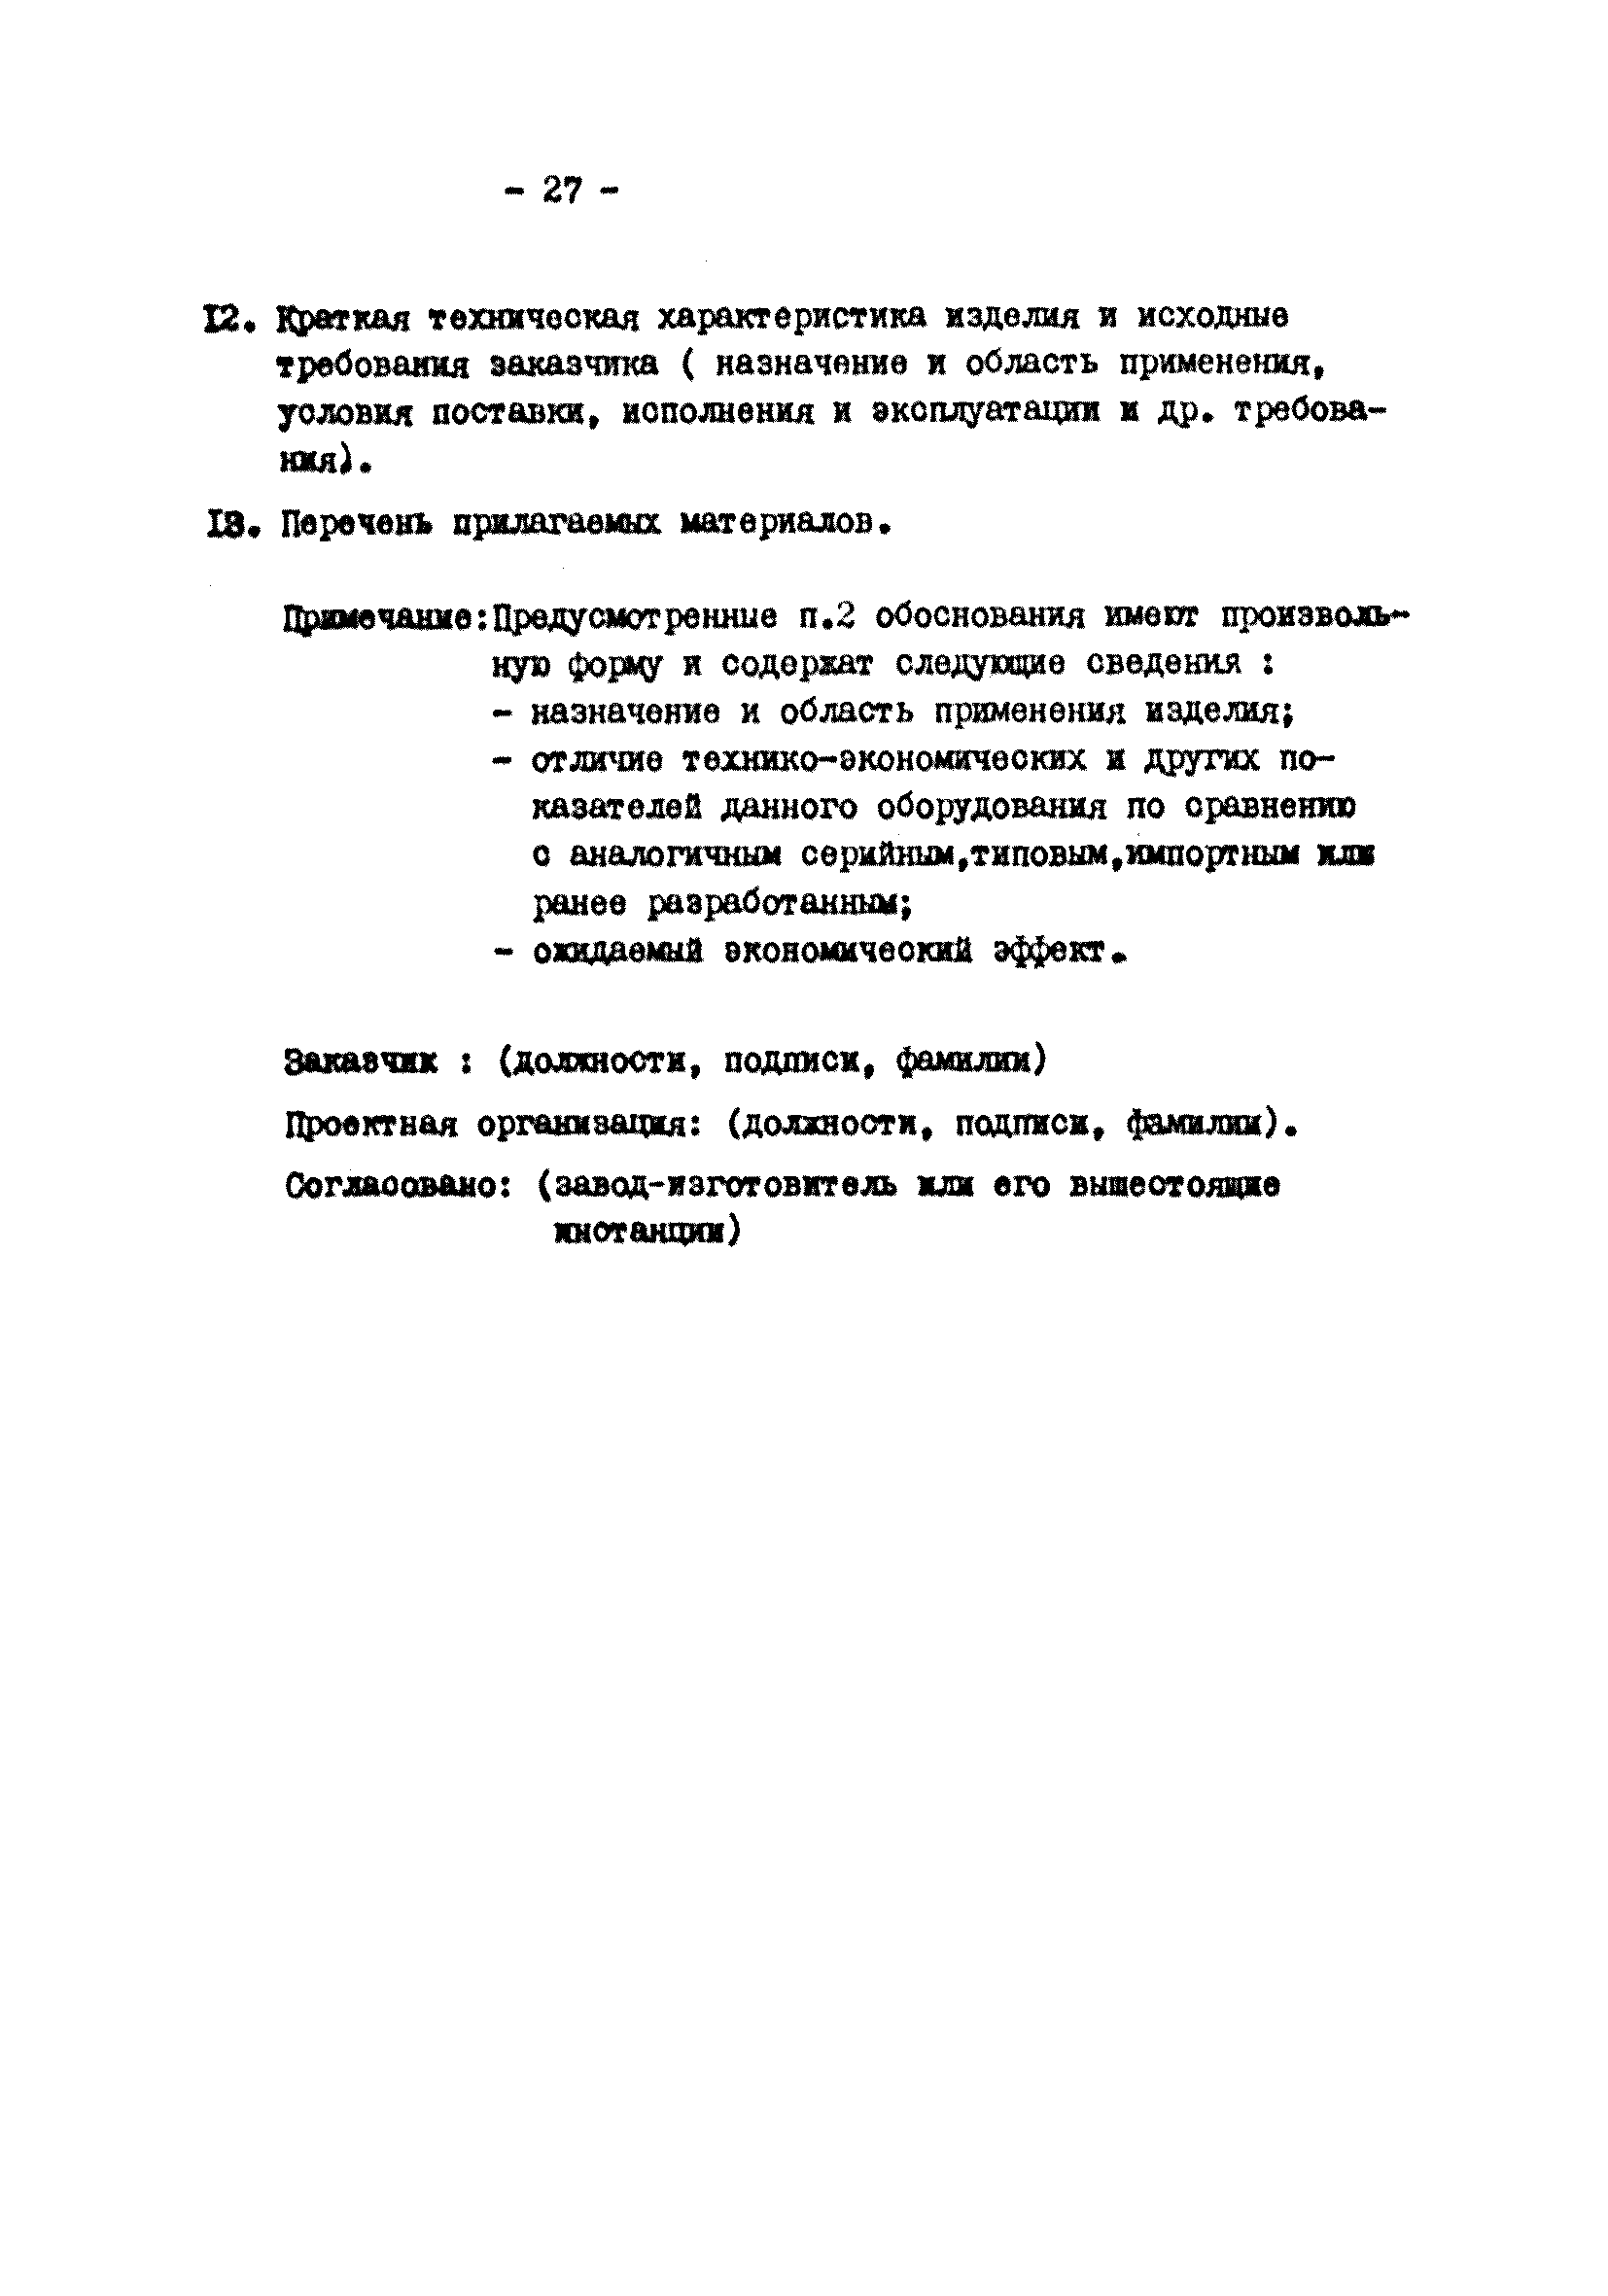 ВНТП 25-81